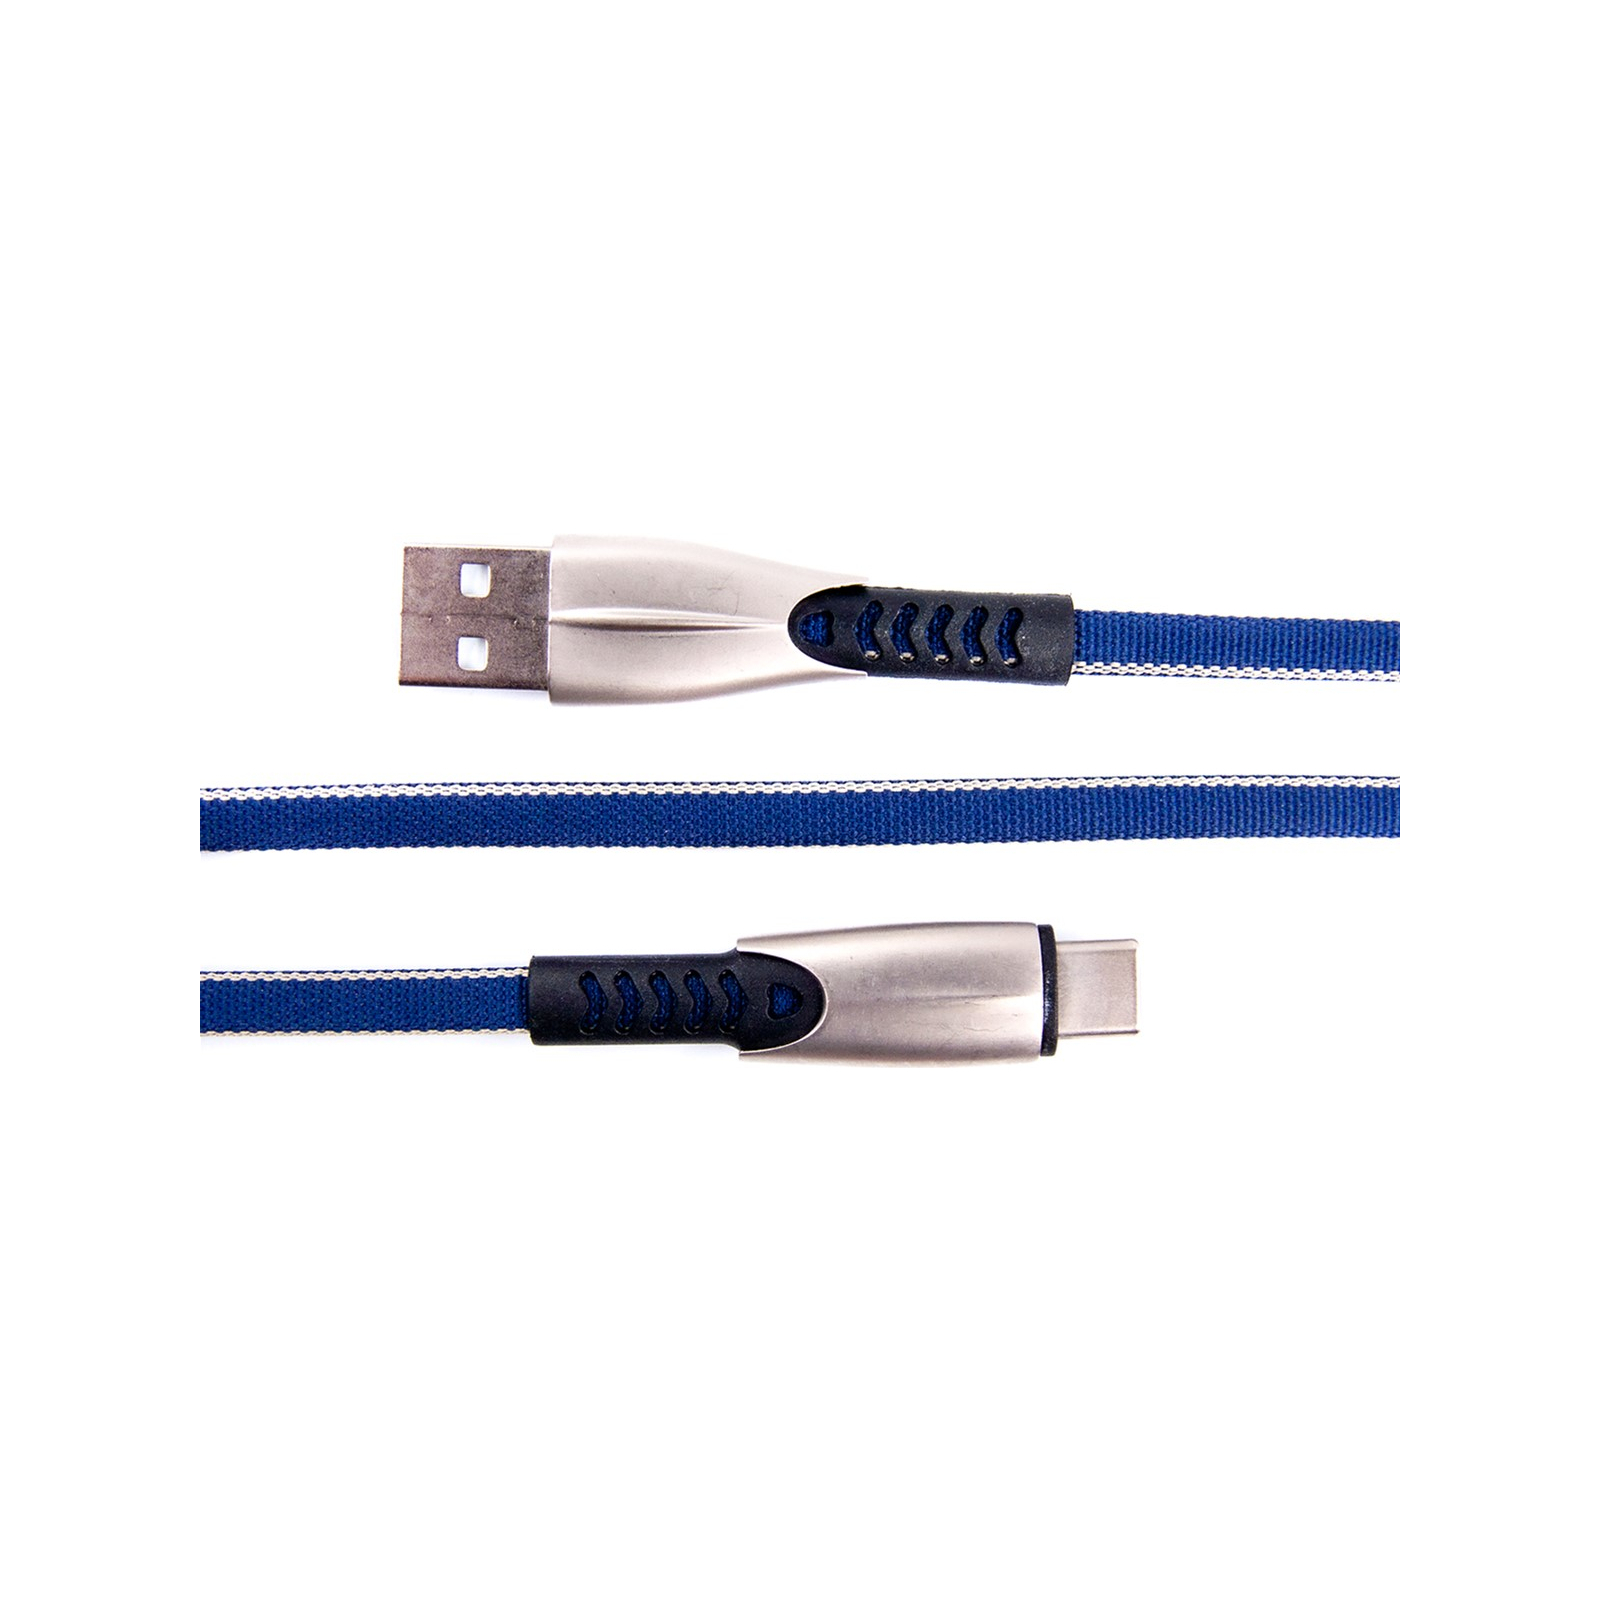 Дата кабель USB 2.0 AM to Type-C 0.25m blue Dengos (PLS-TC-SHRT-PLSK-BLUE) изображение 3